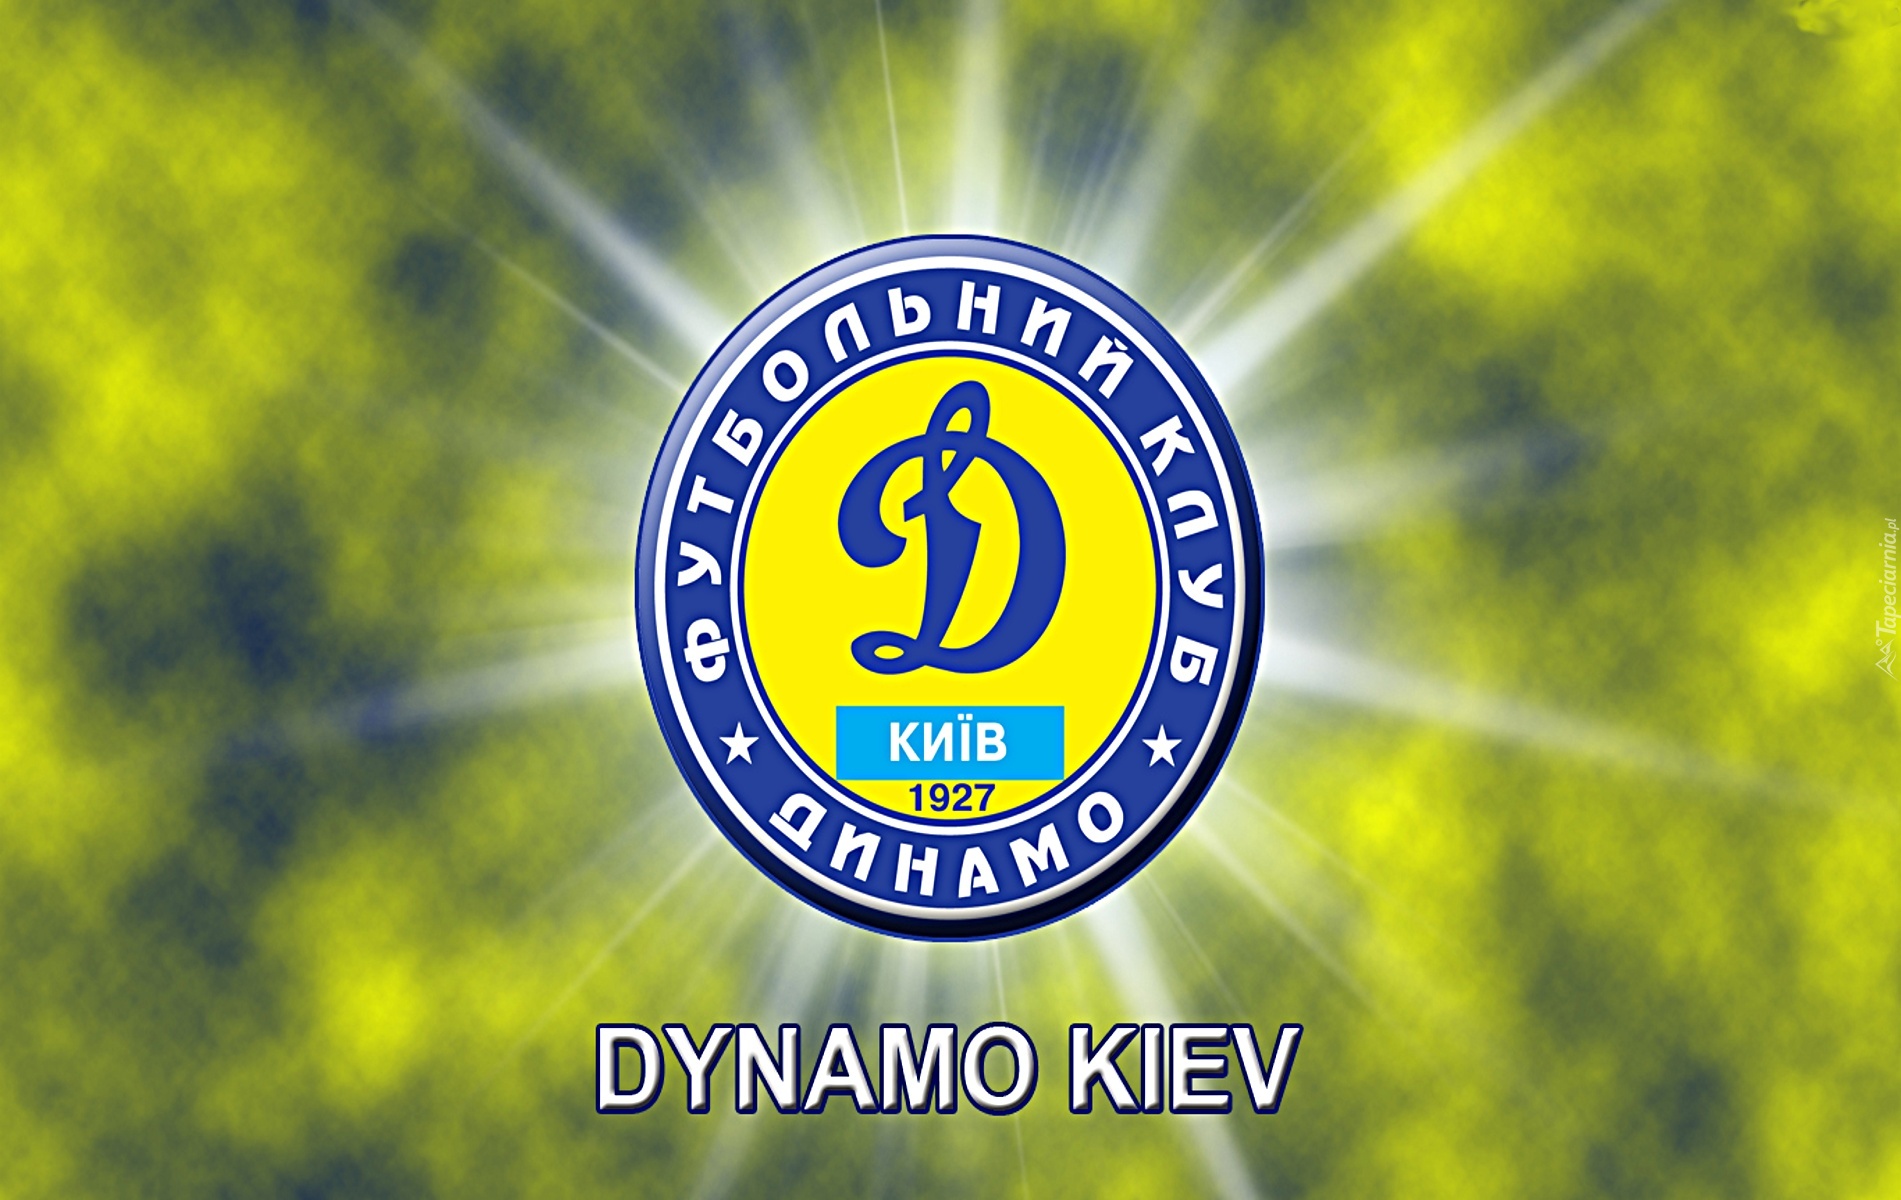 Dynamo Kijów, piłka nożna, sport